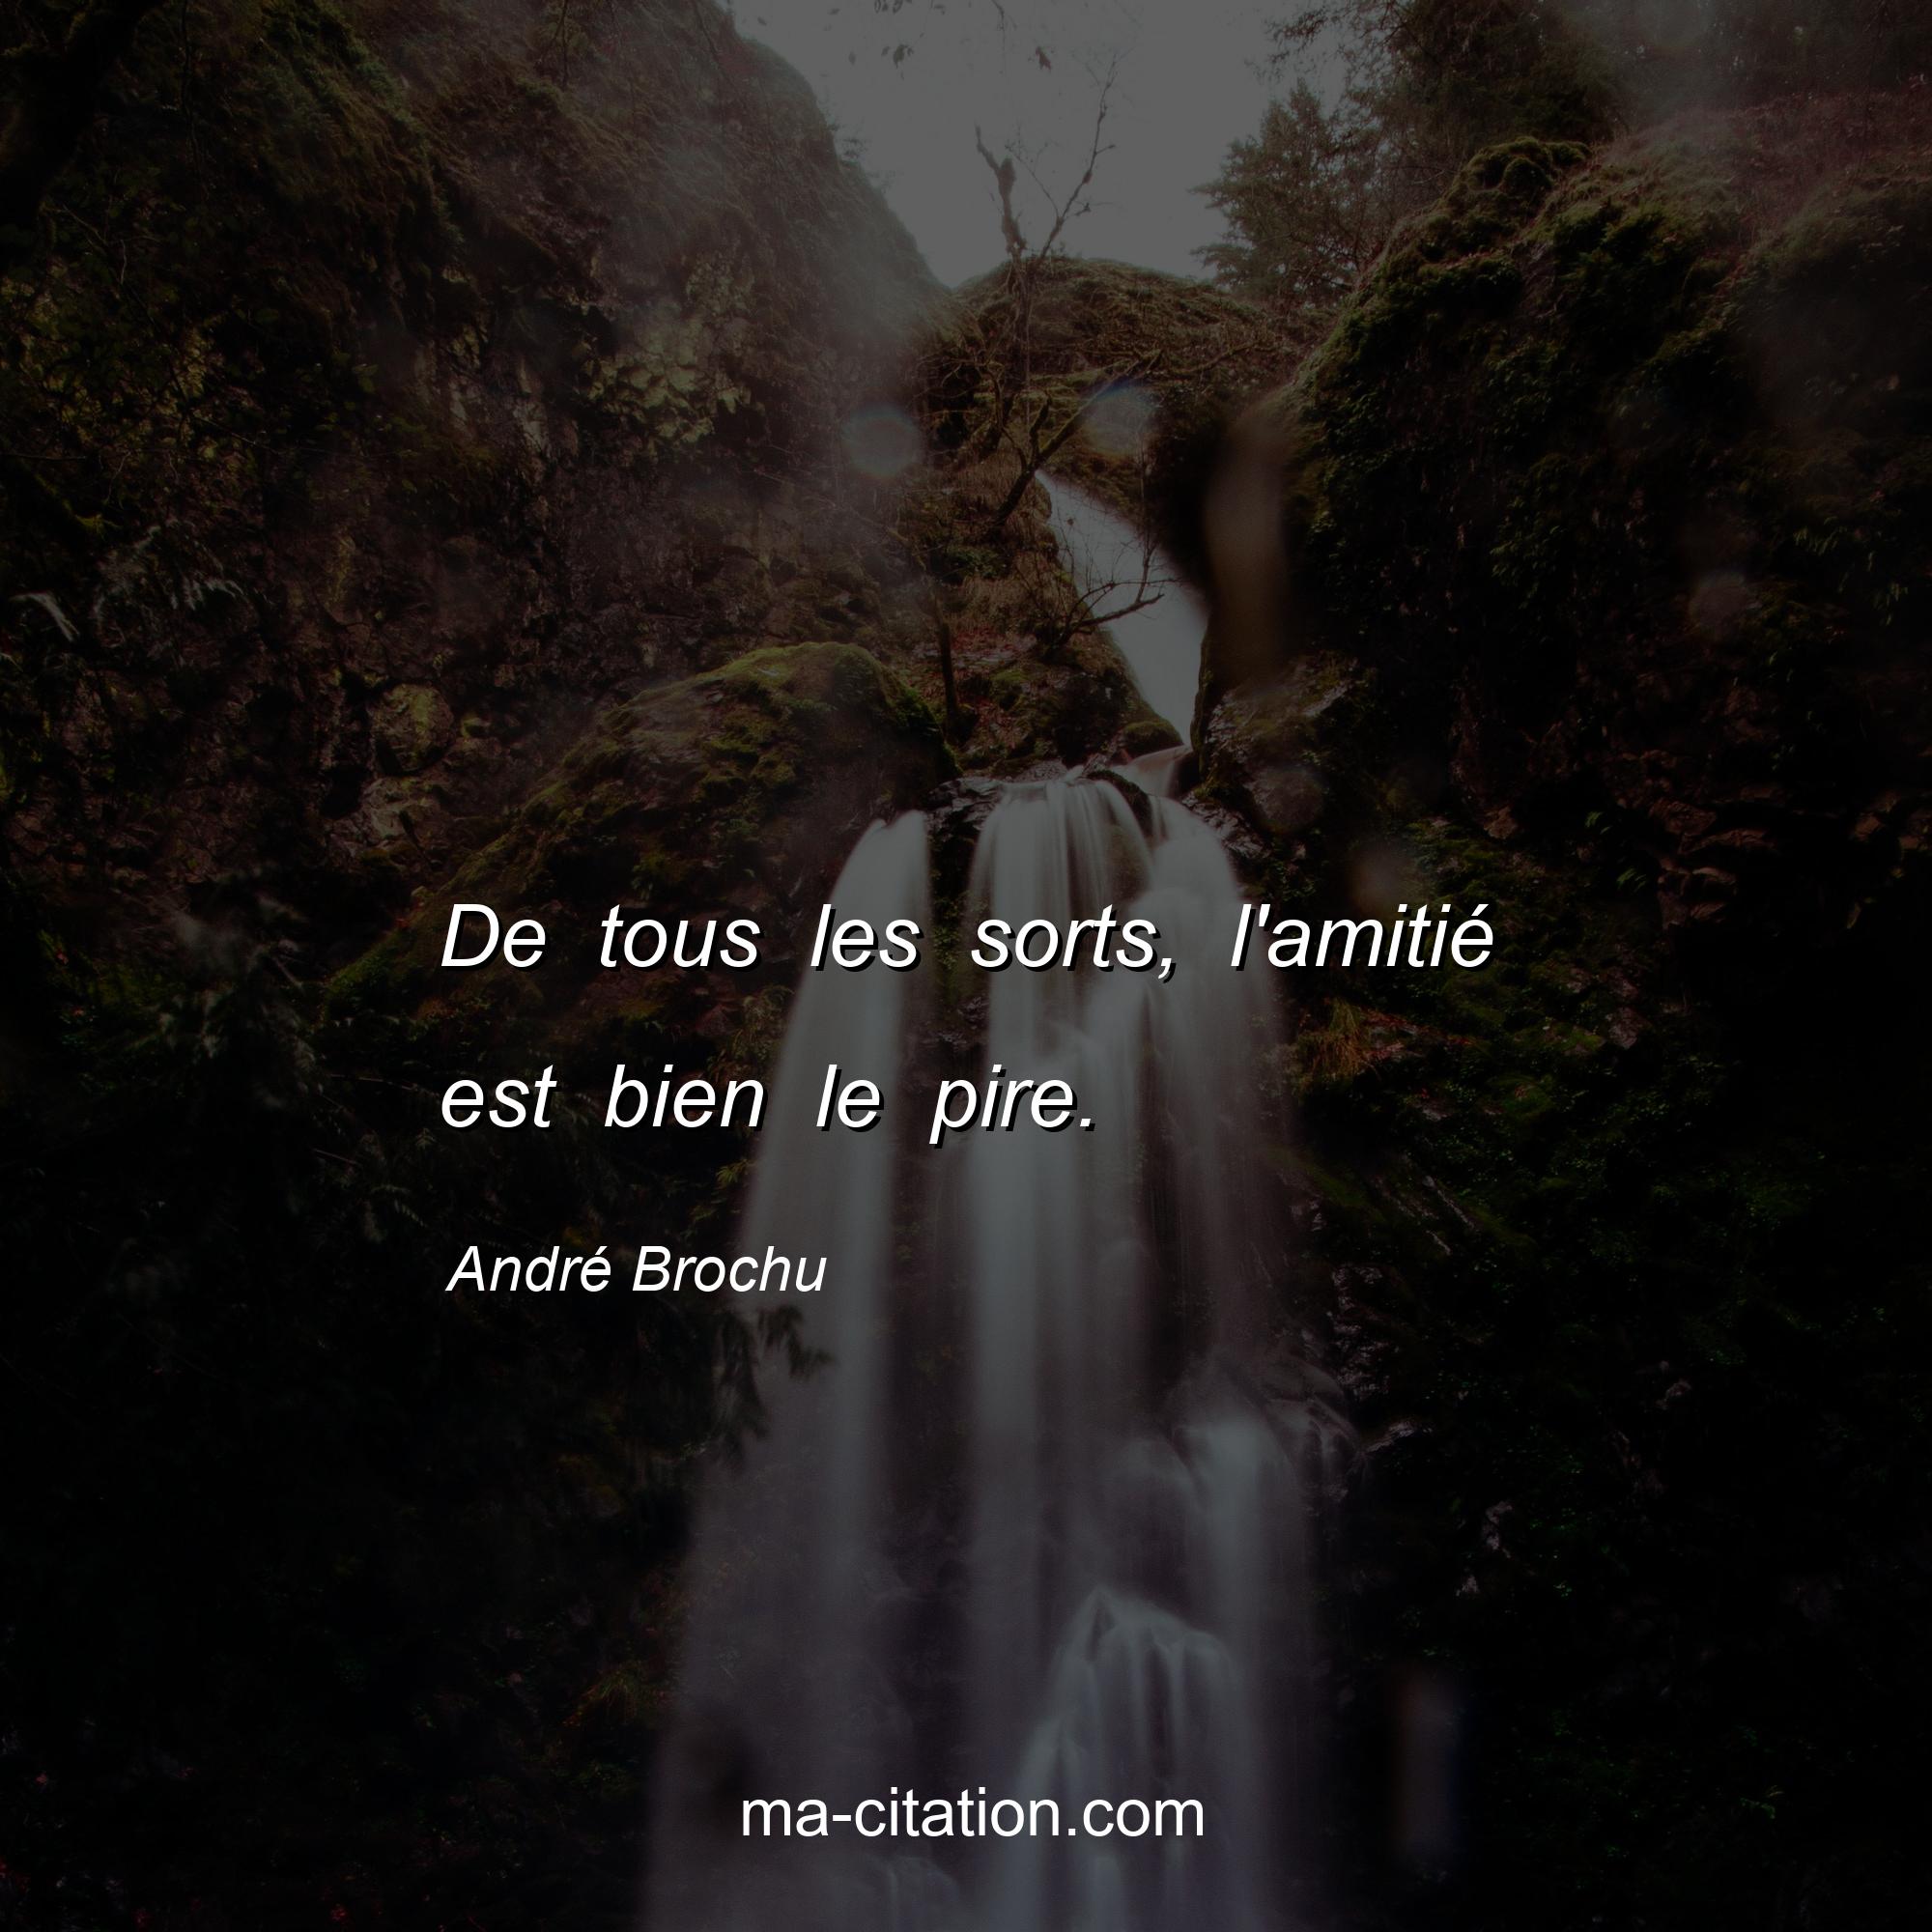 André Brochu : De tous les sorts, l'amitié est bien le pire.